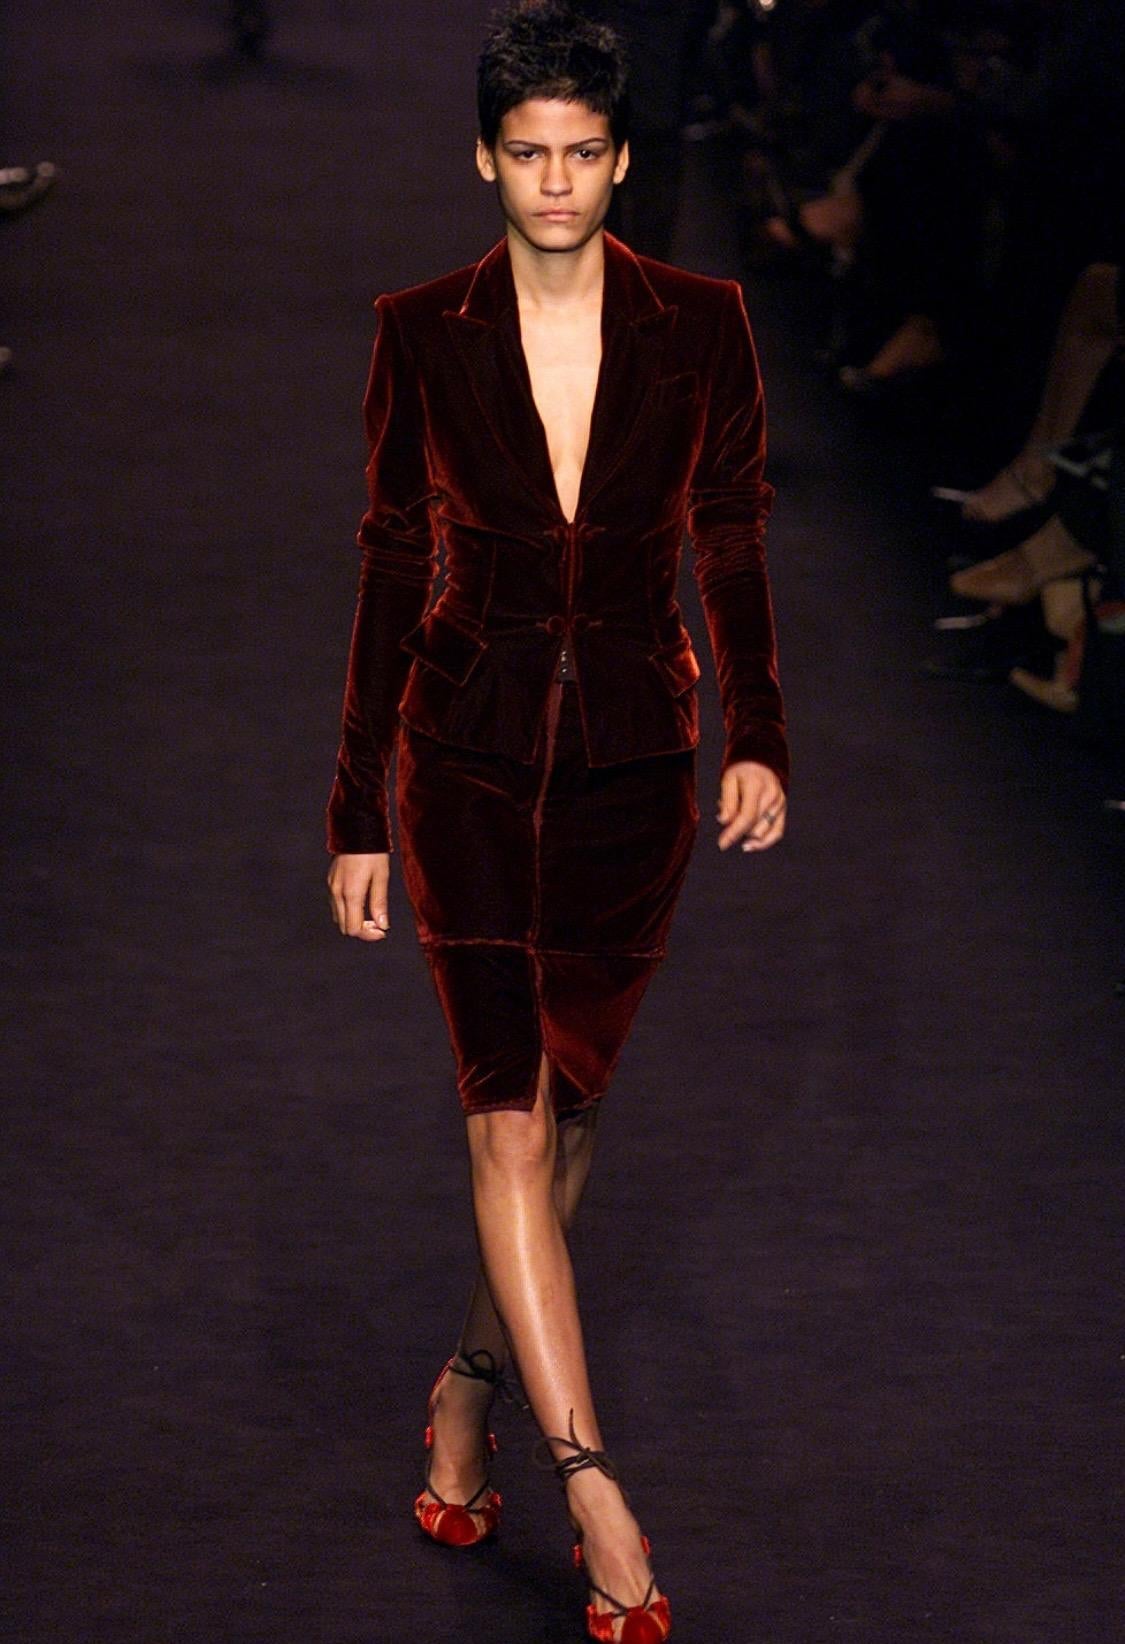 Ce tailleur jupe en velours rouge profond Yves Saint Laurent Rive Gauche a été conçu par Tom Ford pour la collection automne/hiver 2002. Ce costume a été présenté en tant que look 7 sur le défilé de cette saison et a également été vu sur Julianne